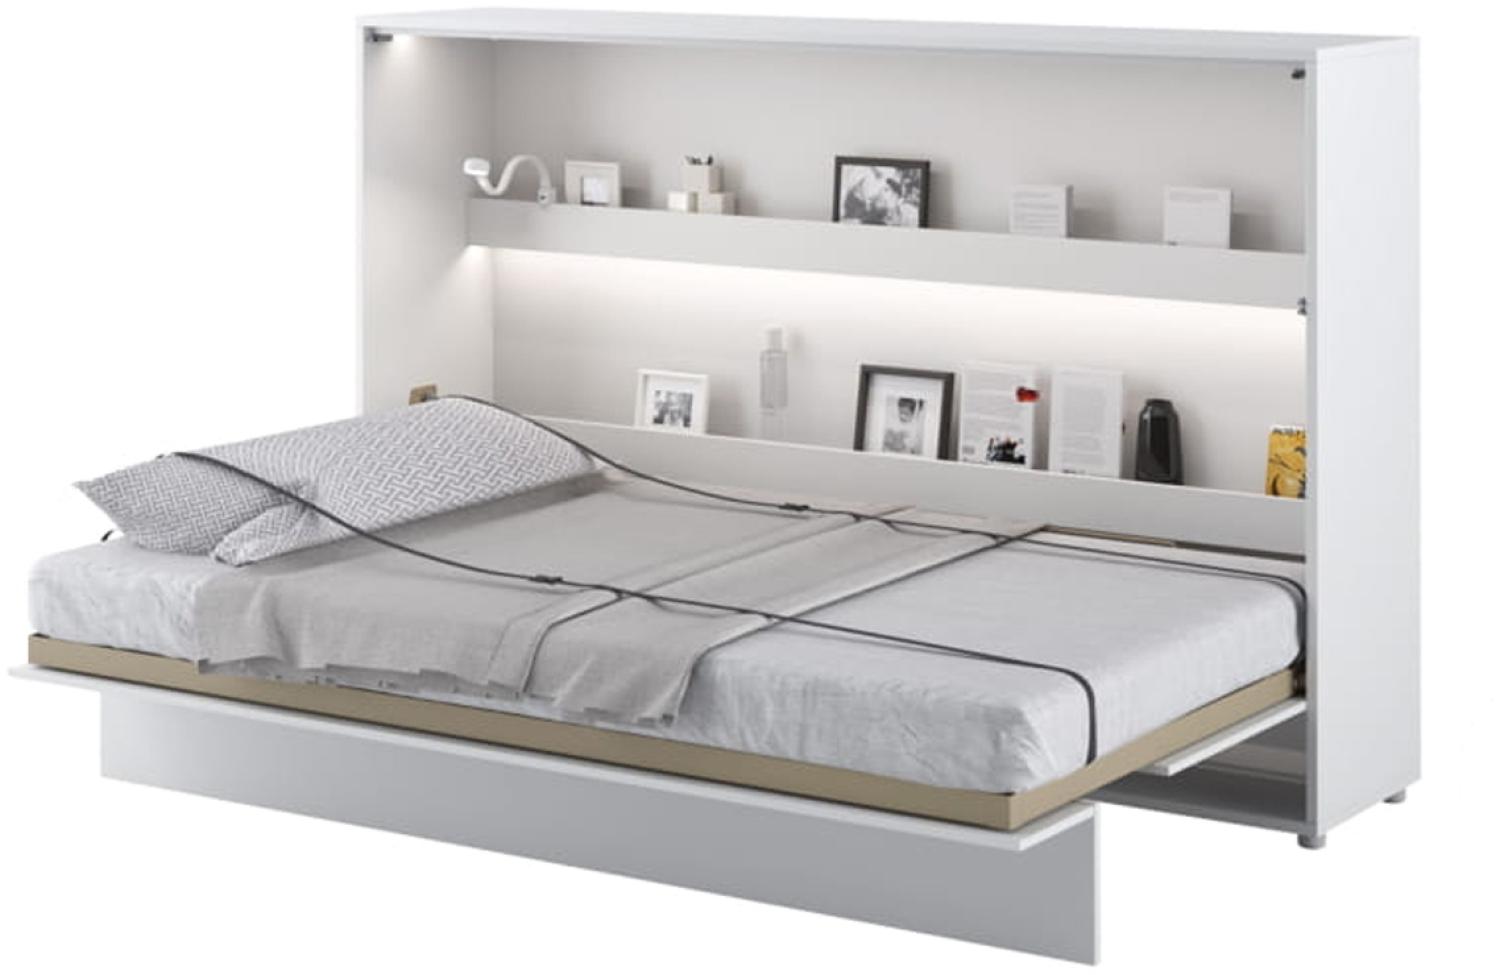 MEBLINI Schrankbett Bed Concept - BC-05 - 120x200cm Horizontal - Weiß Hochglanz/Weiß mit Matratze - Wandbett mit Lattenrost - Klappbett mit Schrank - Wandklappbett - Murphy Bed - Bettschrank Bild 1